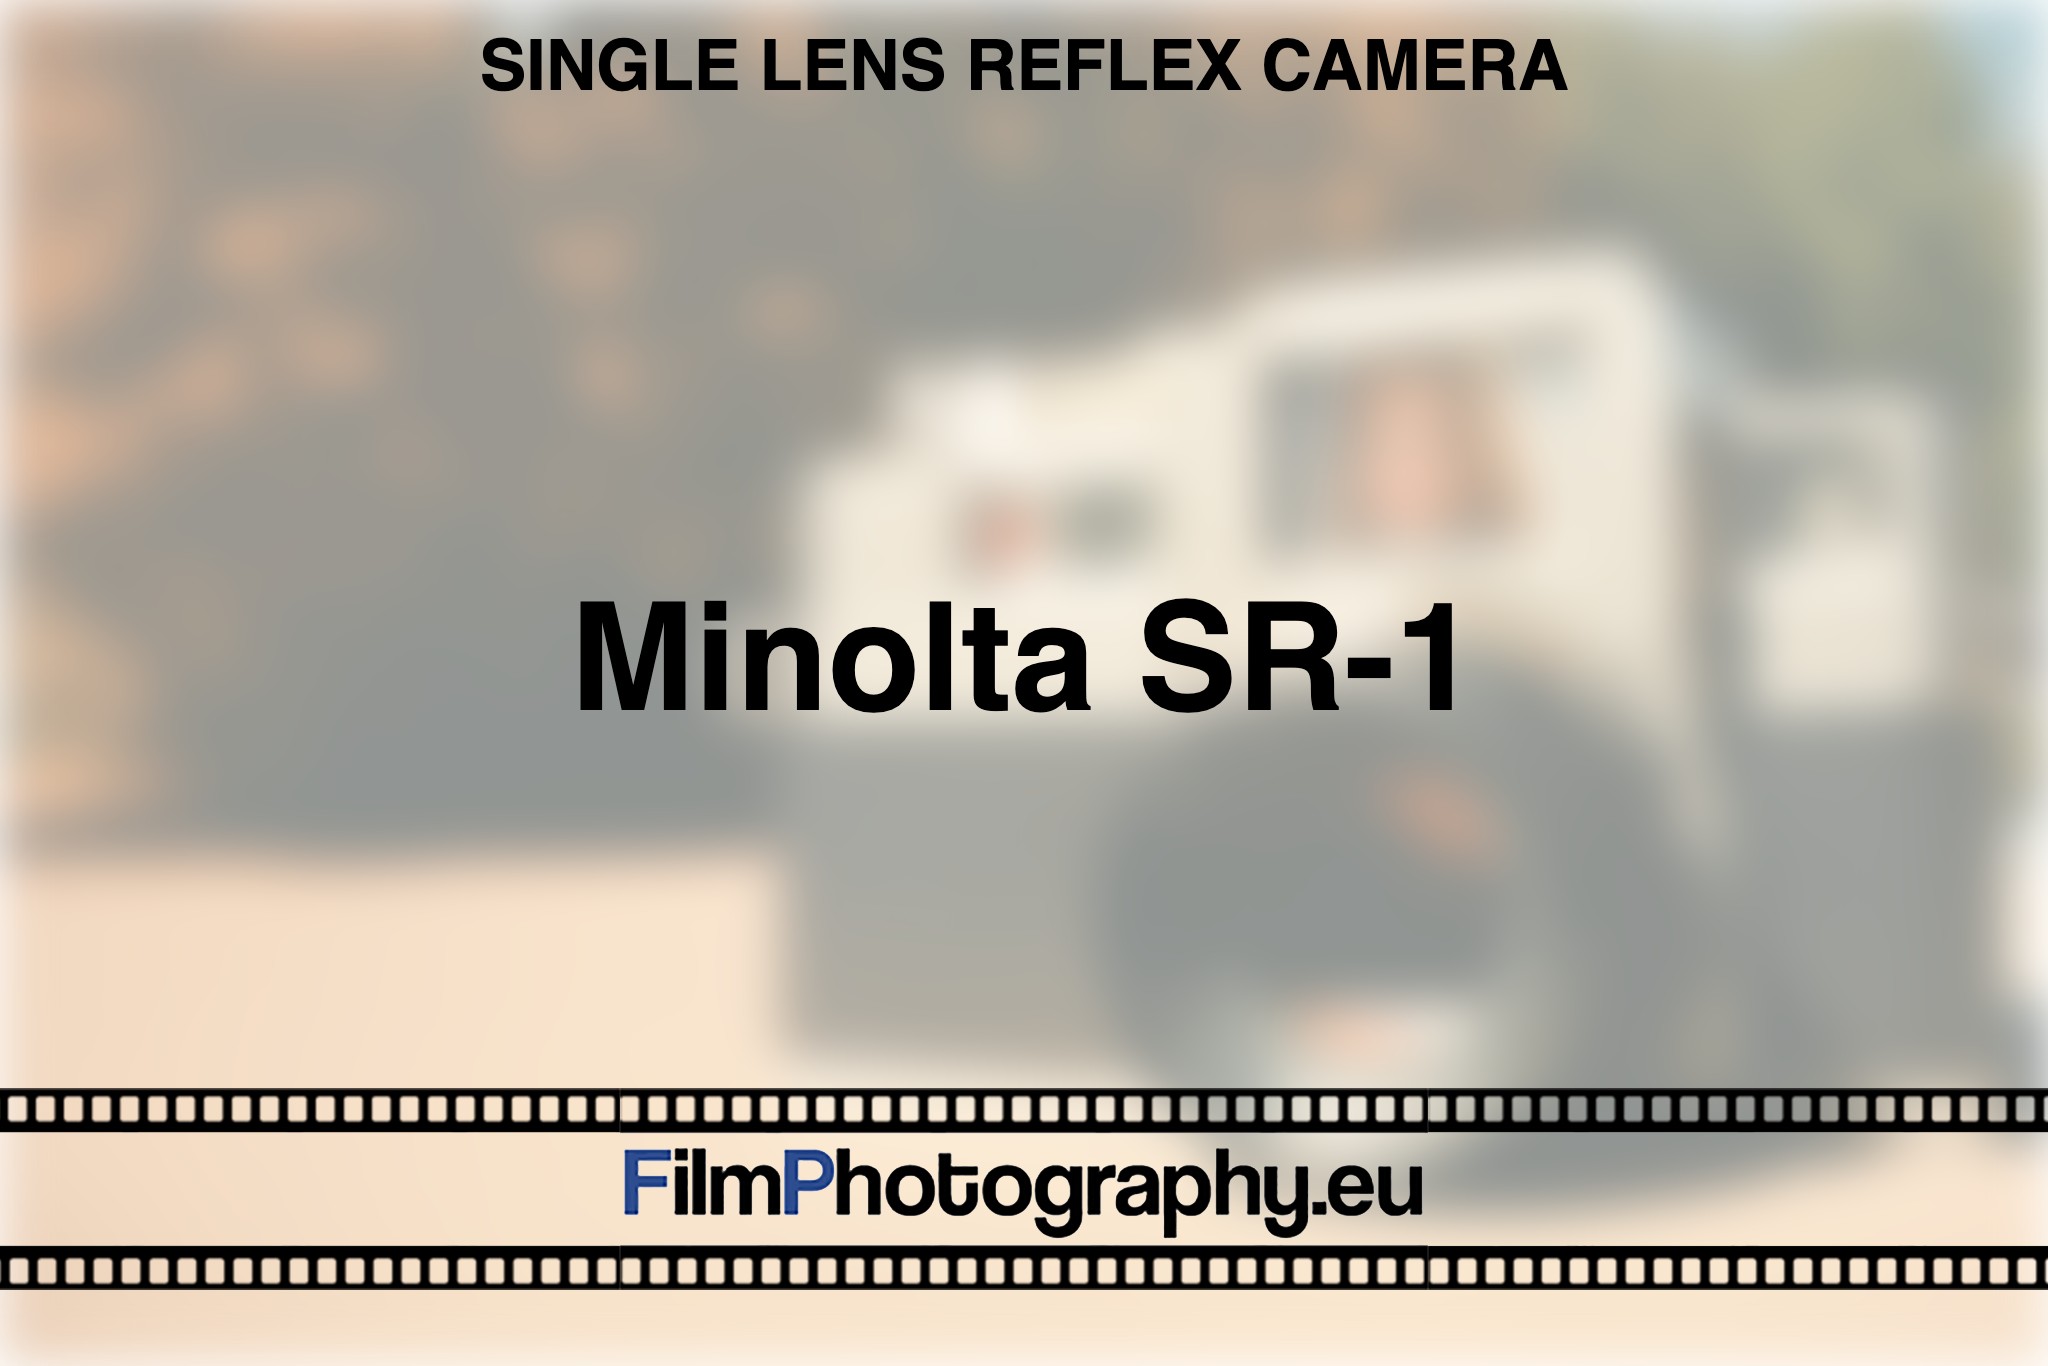 minolta-sr-1-single-lens-reflex-camera-bnv